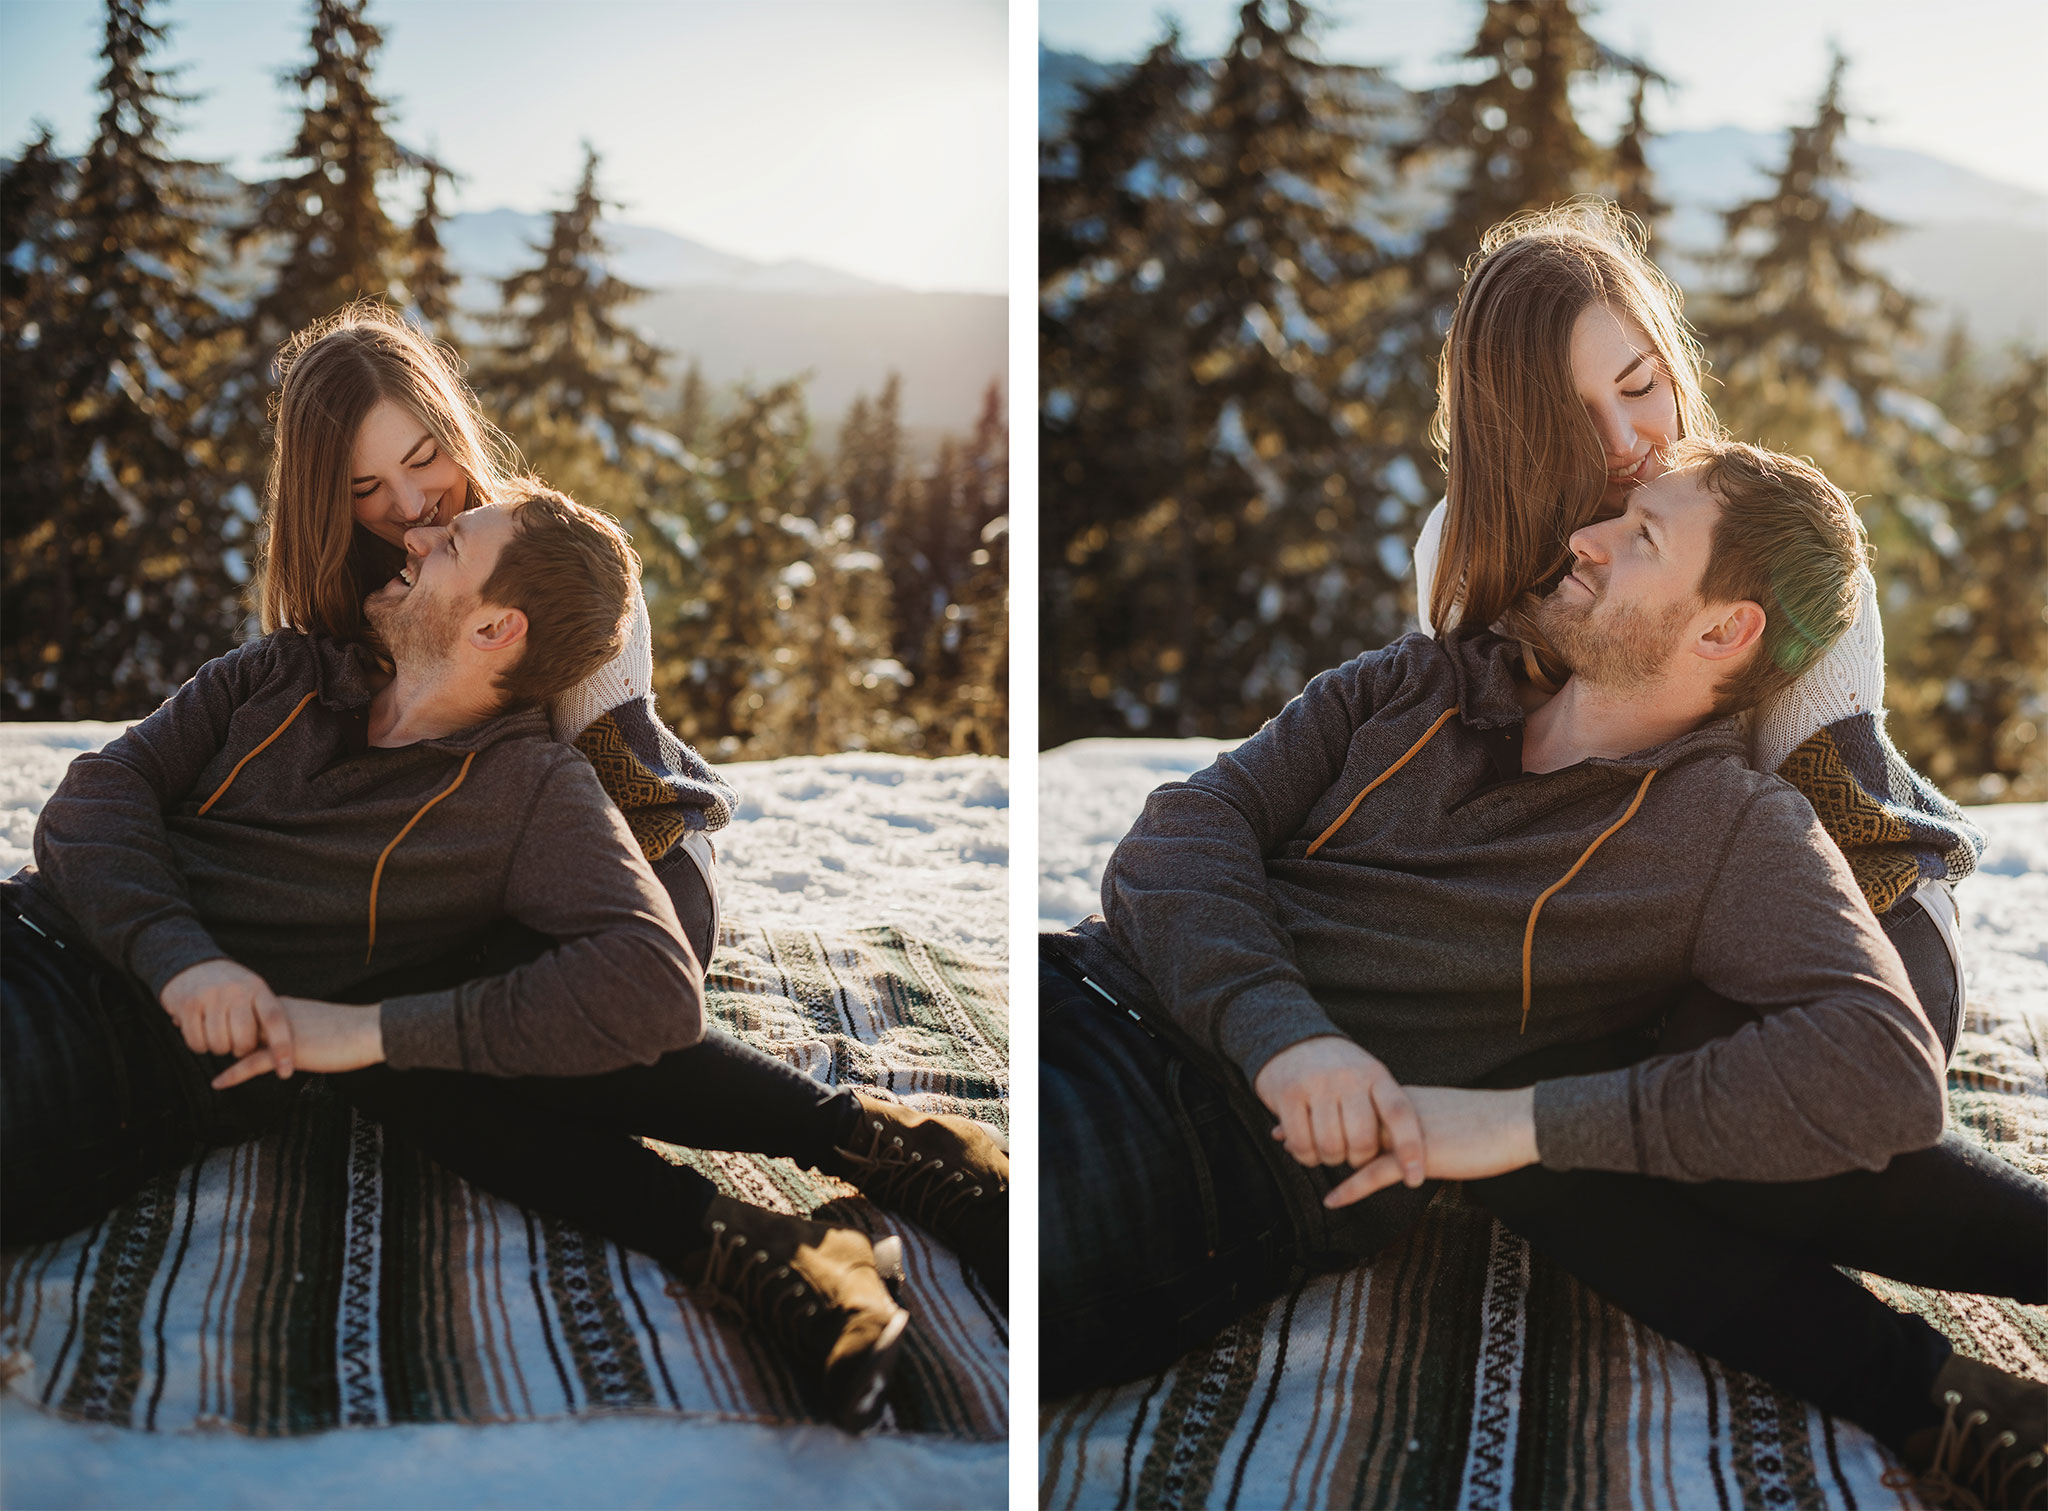 Couples engagement photography on Mount Washington at sunset.